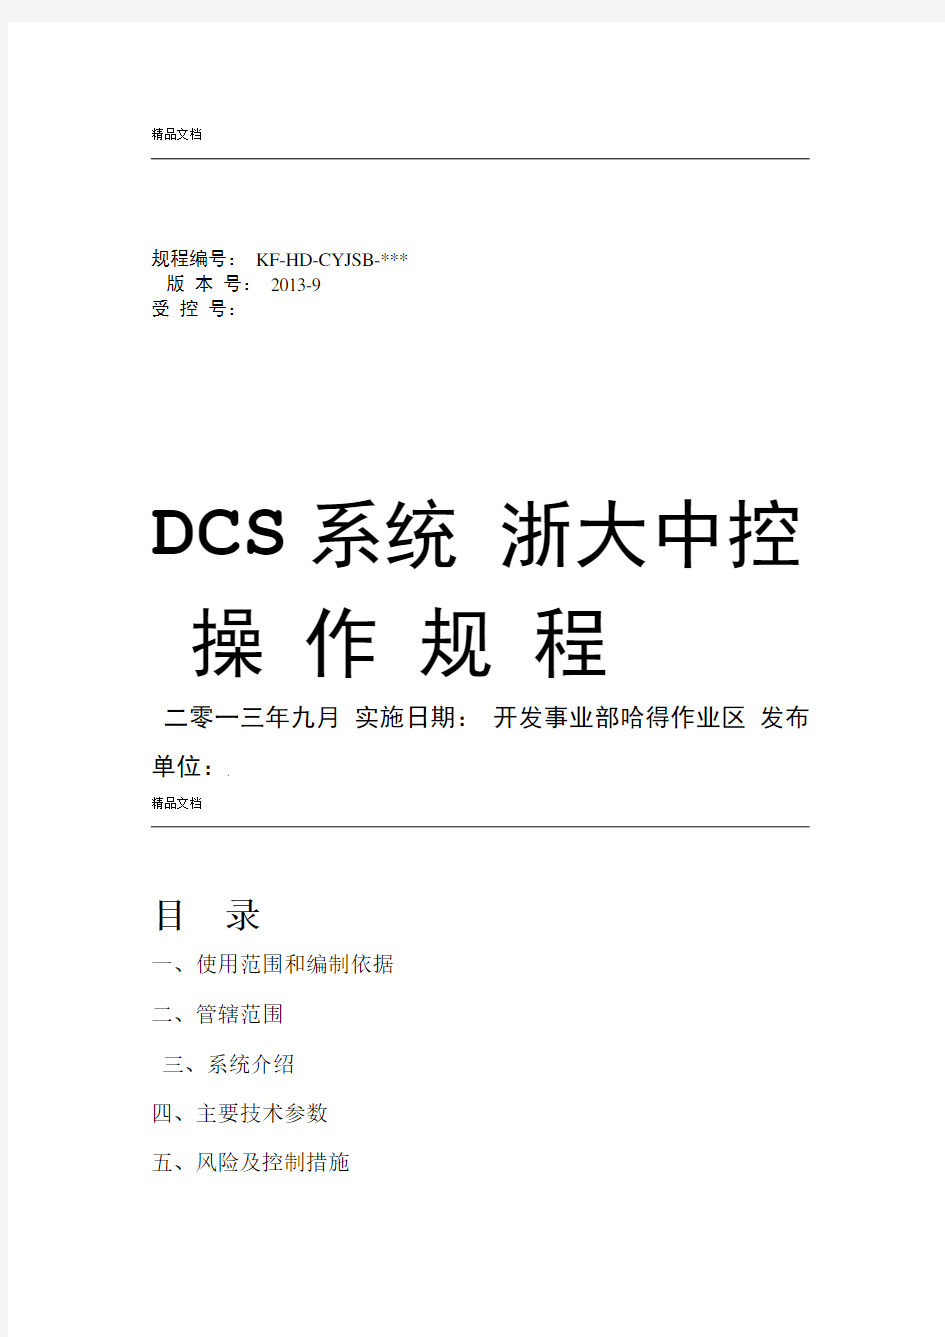 浙大中控DCS系统操作规程